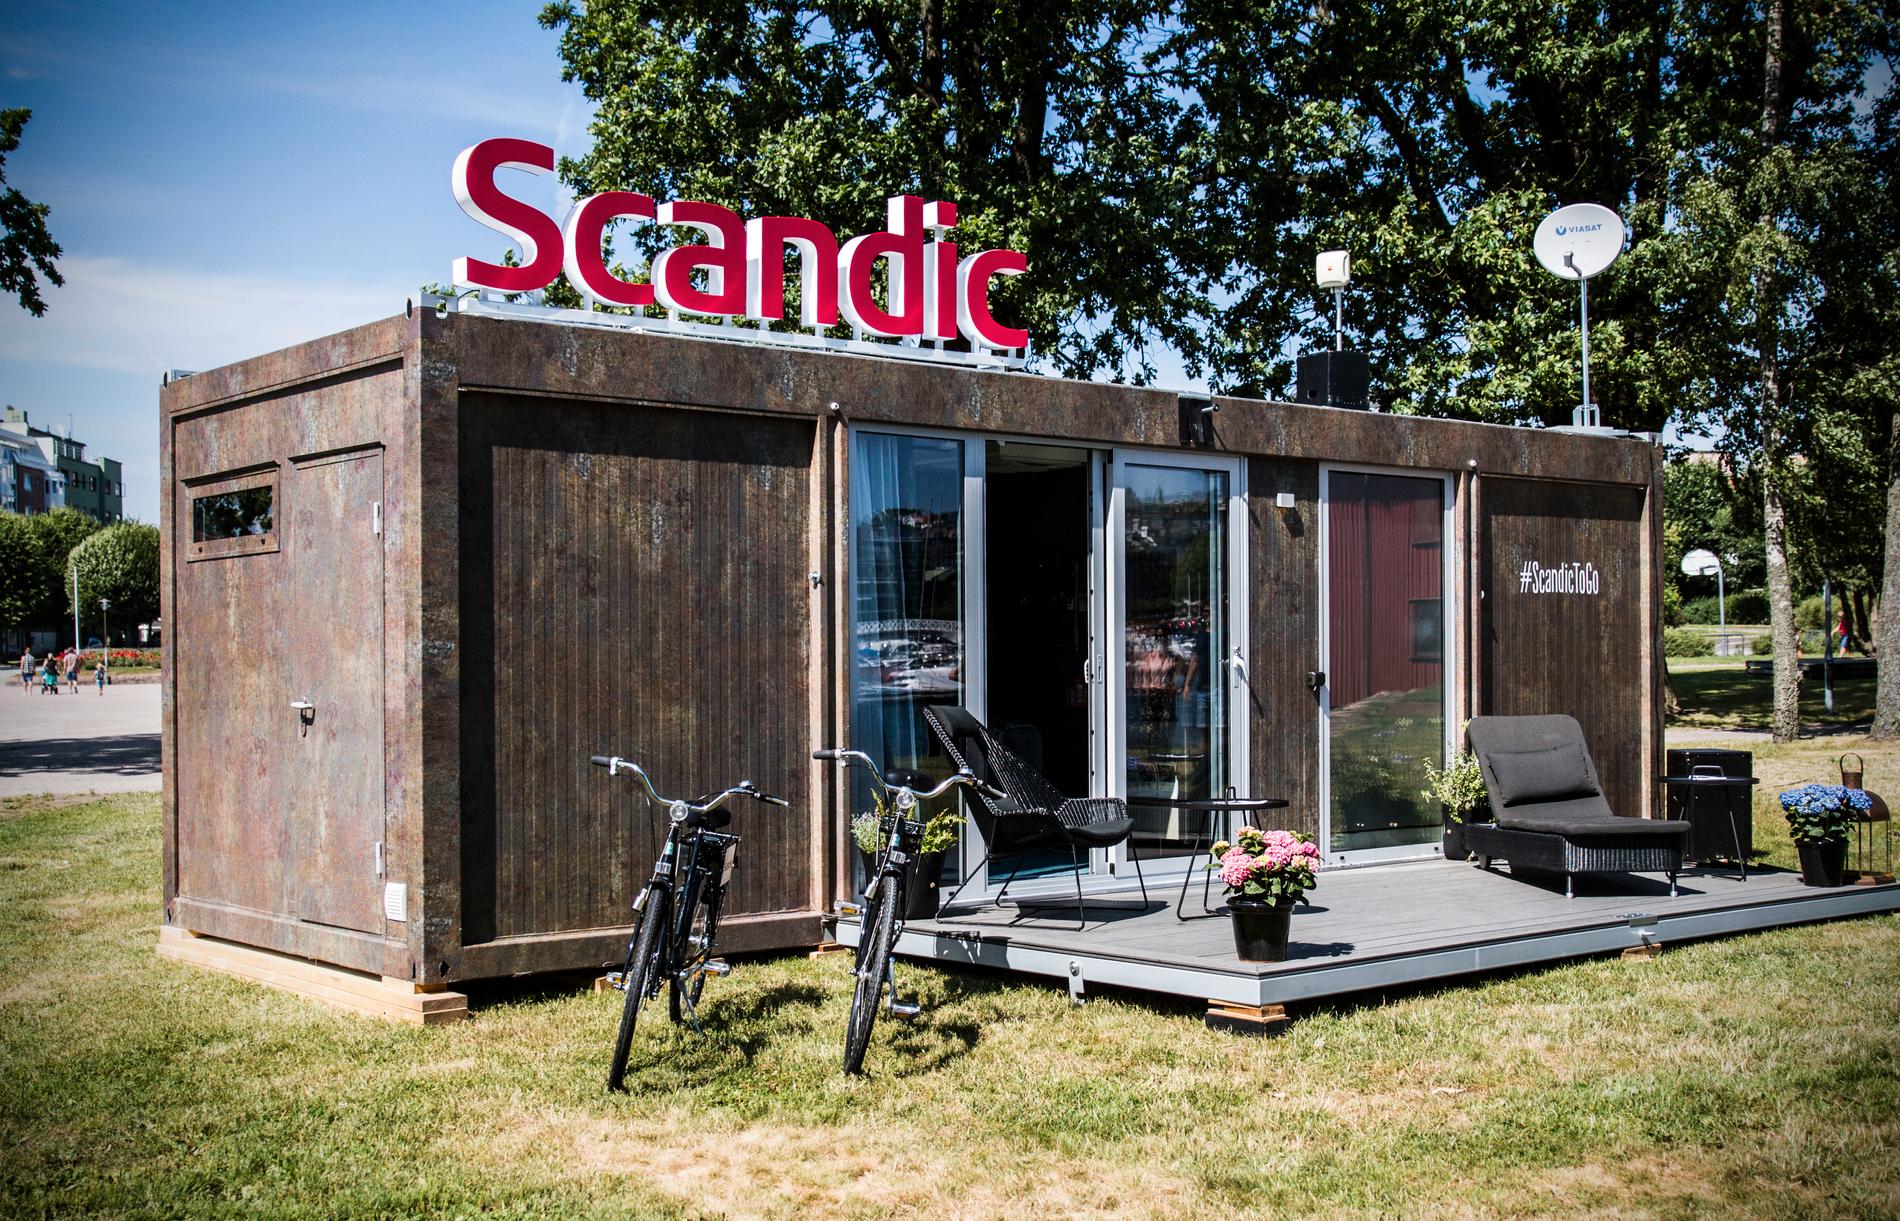 Hotellkjeden Scandic har brukt en container som utgangspunkt i deres mobile hotellrom. Foto: Lena Rustan Fidjestad